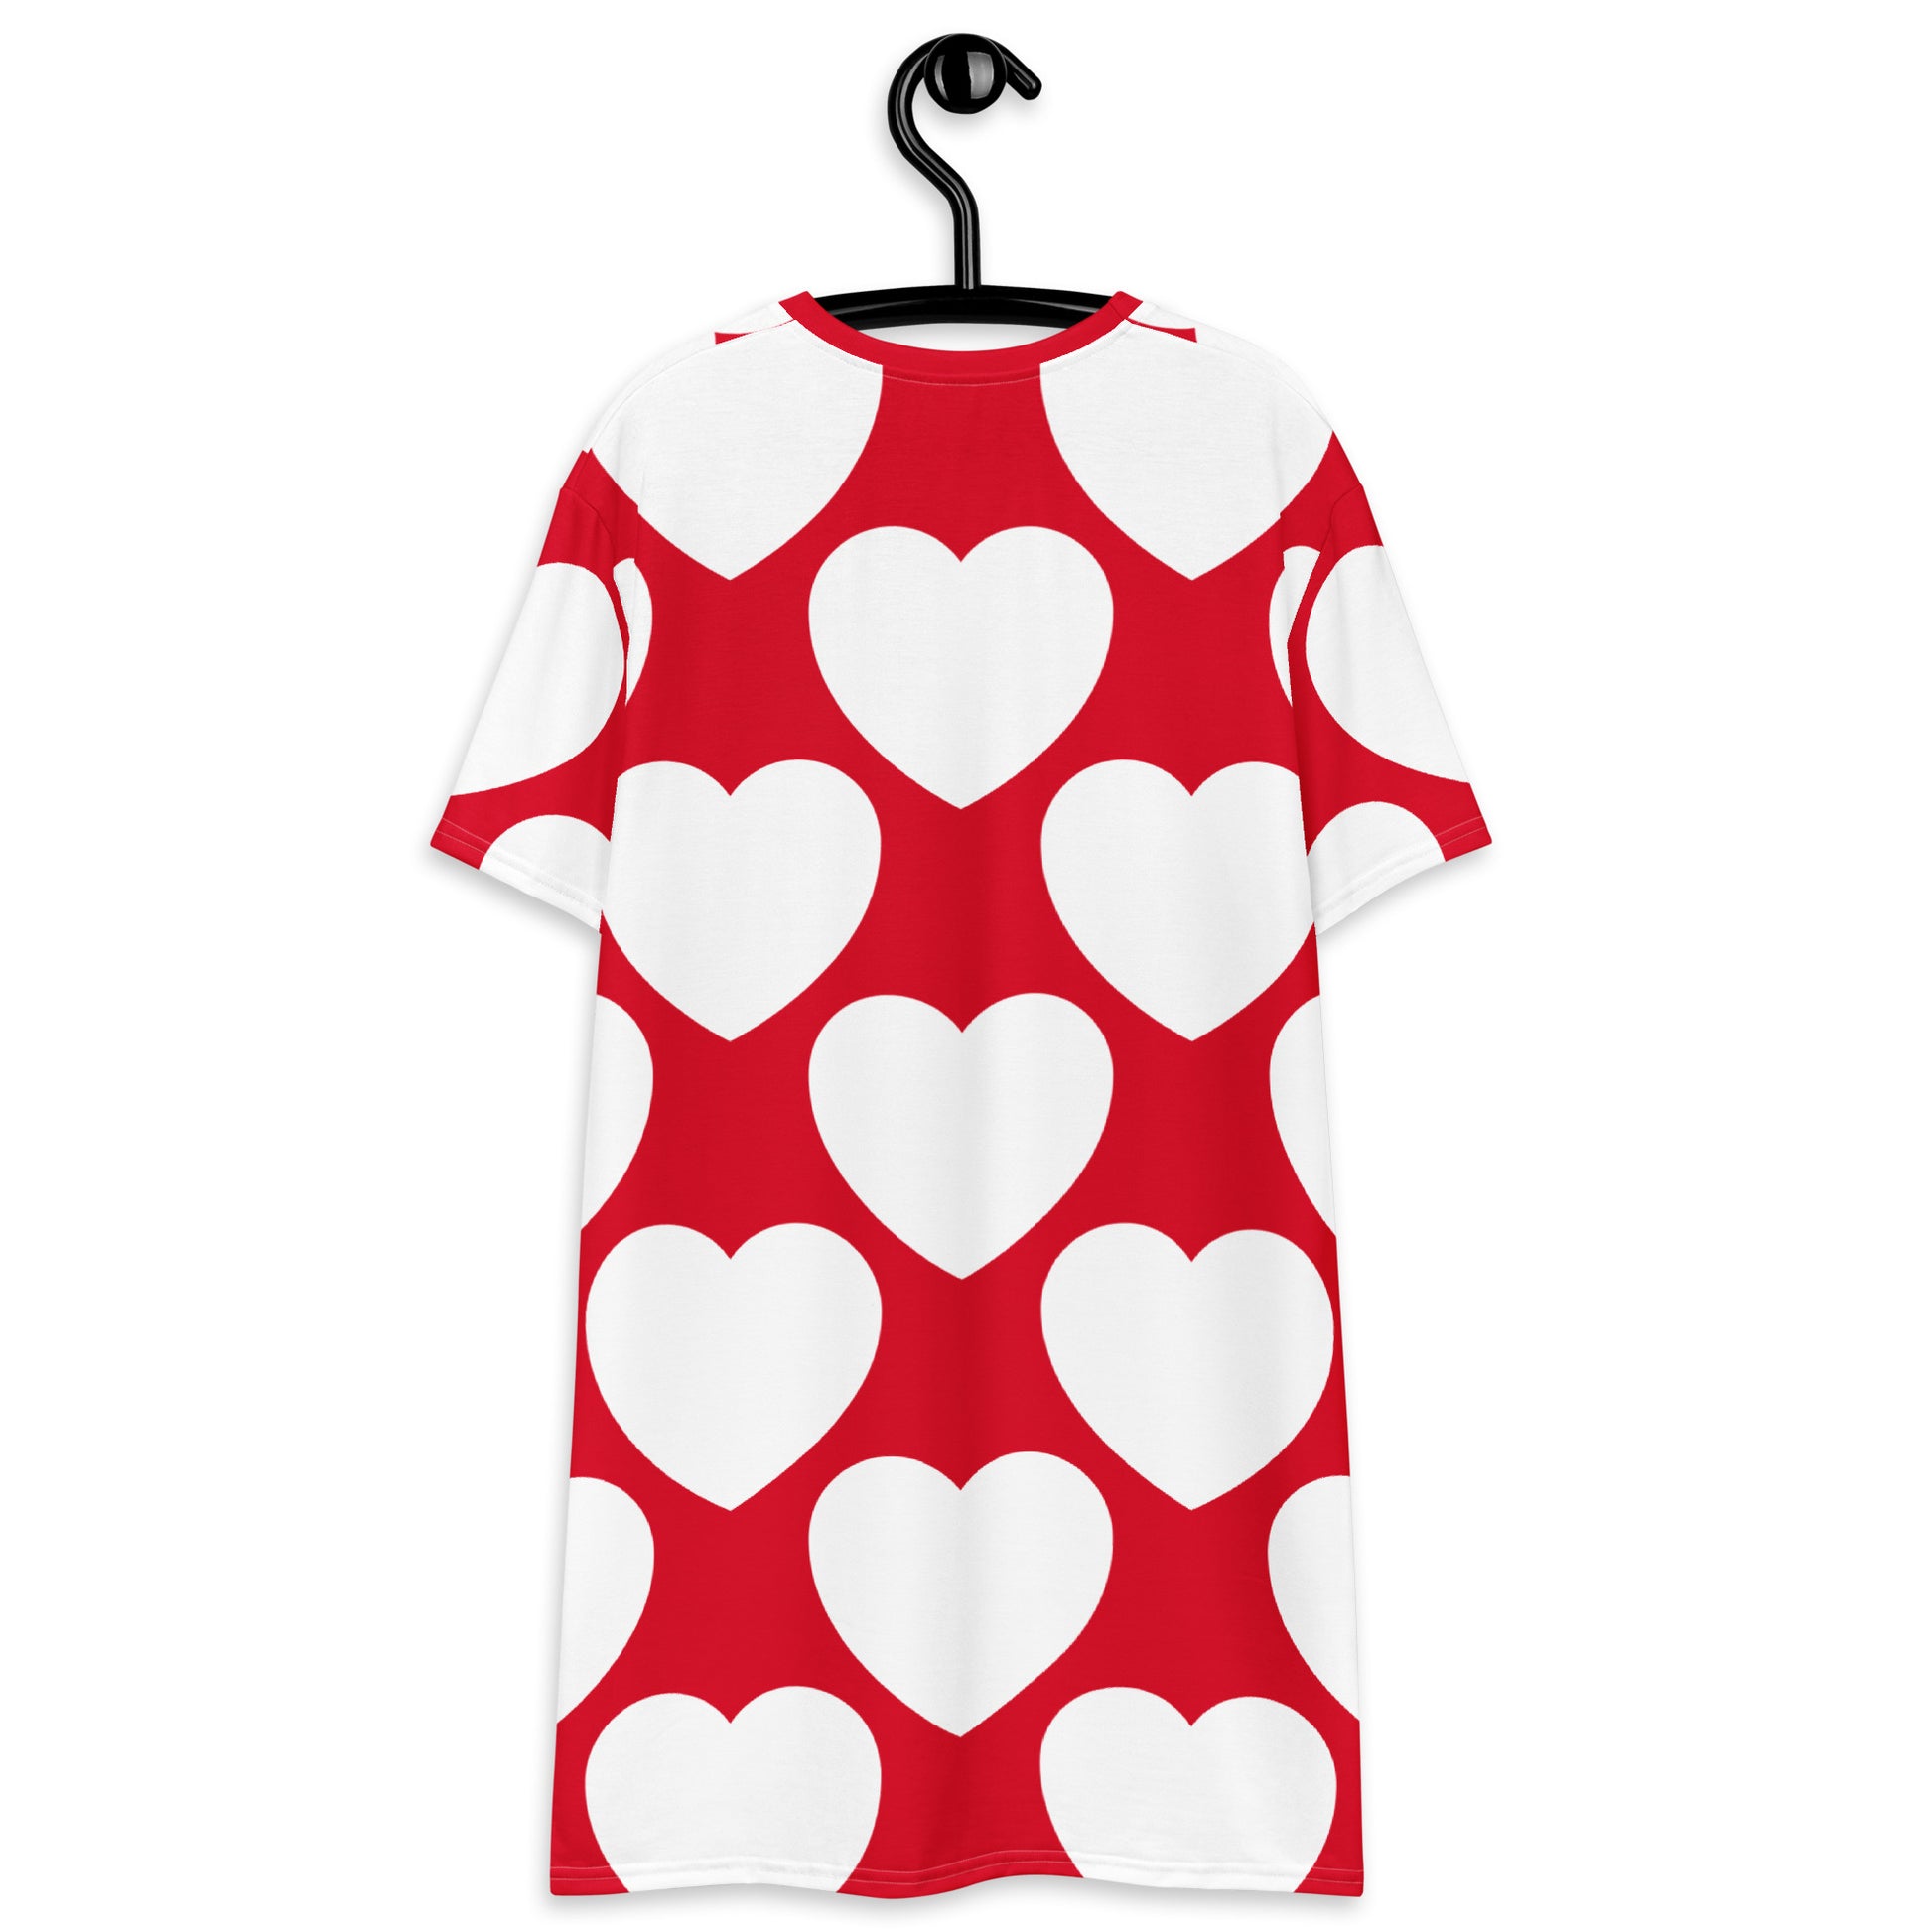 ELLIE LOVE redwhite - T-shirt dress - SHALMIAK